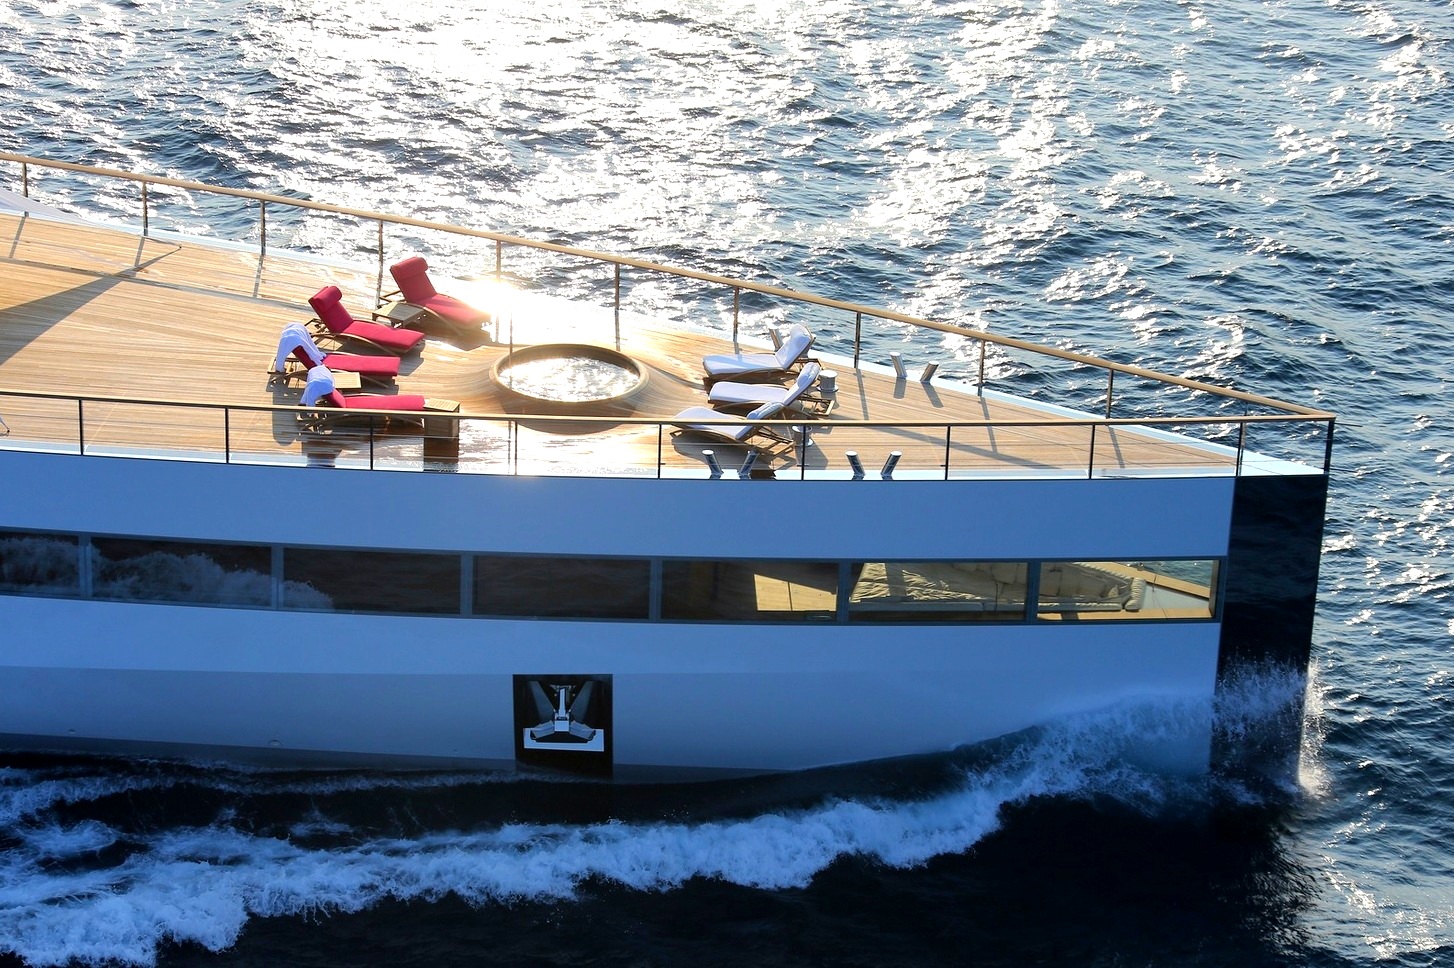 steve jobs yacht tour